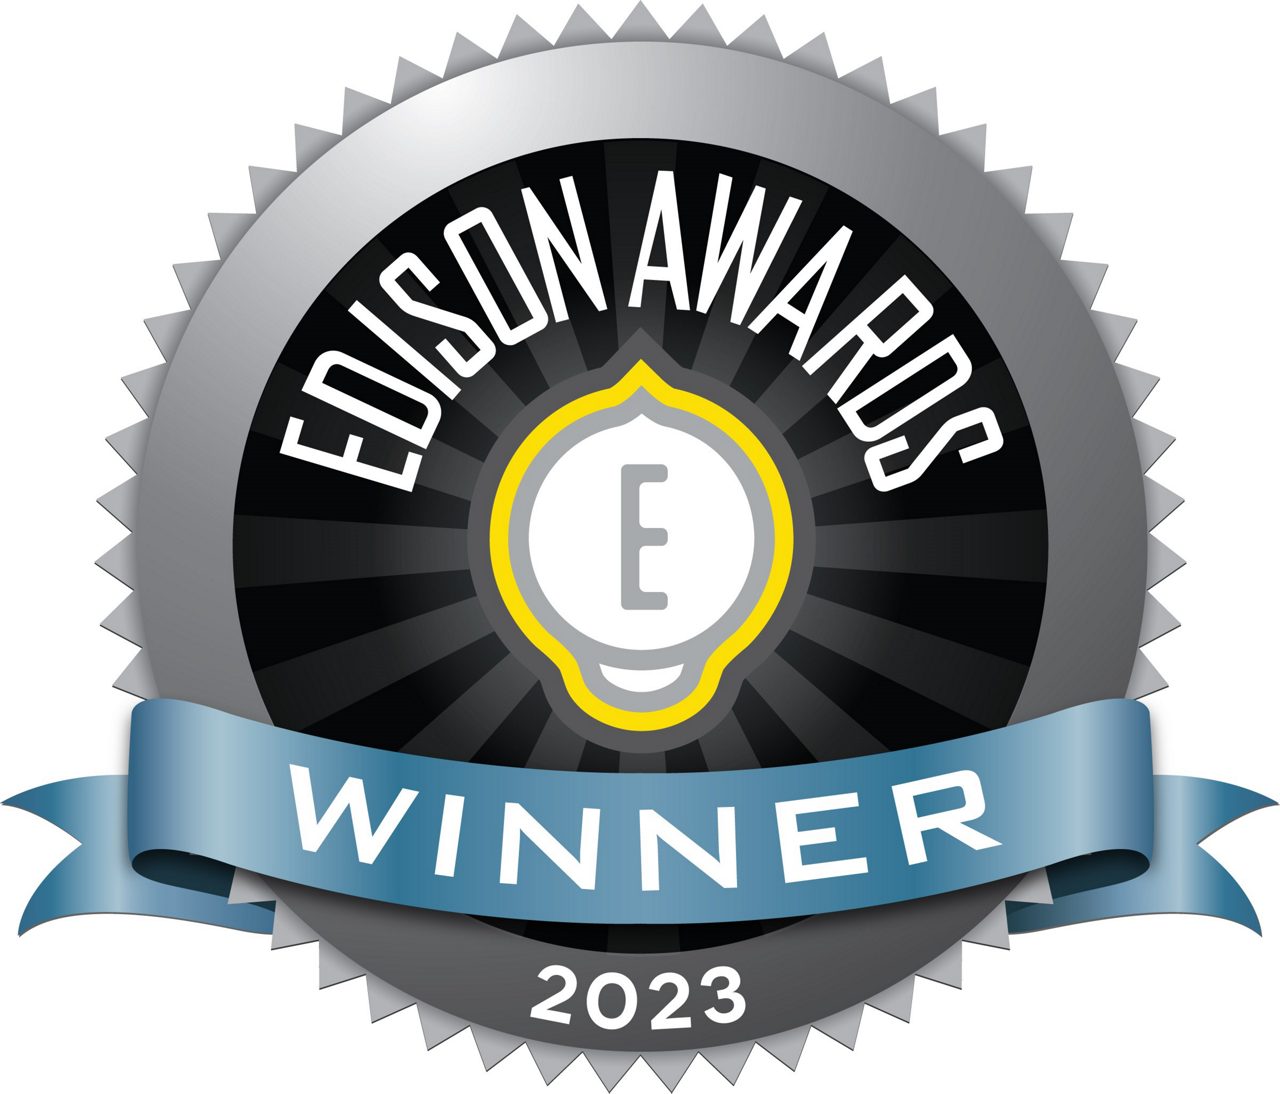 2023 Edison Award Winner logo